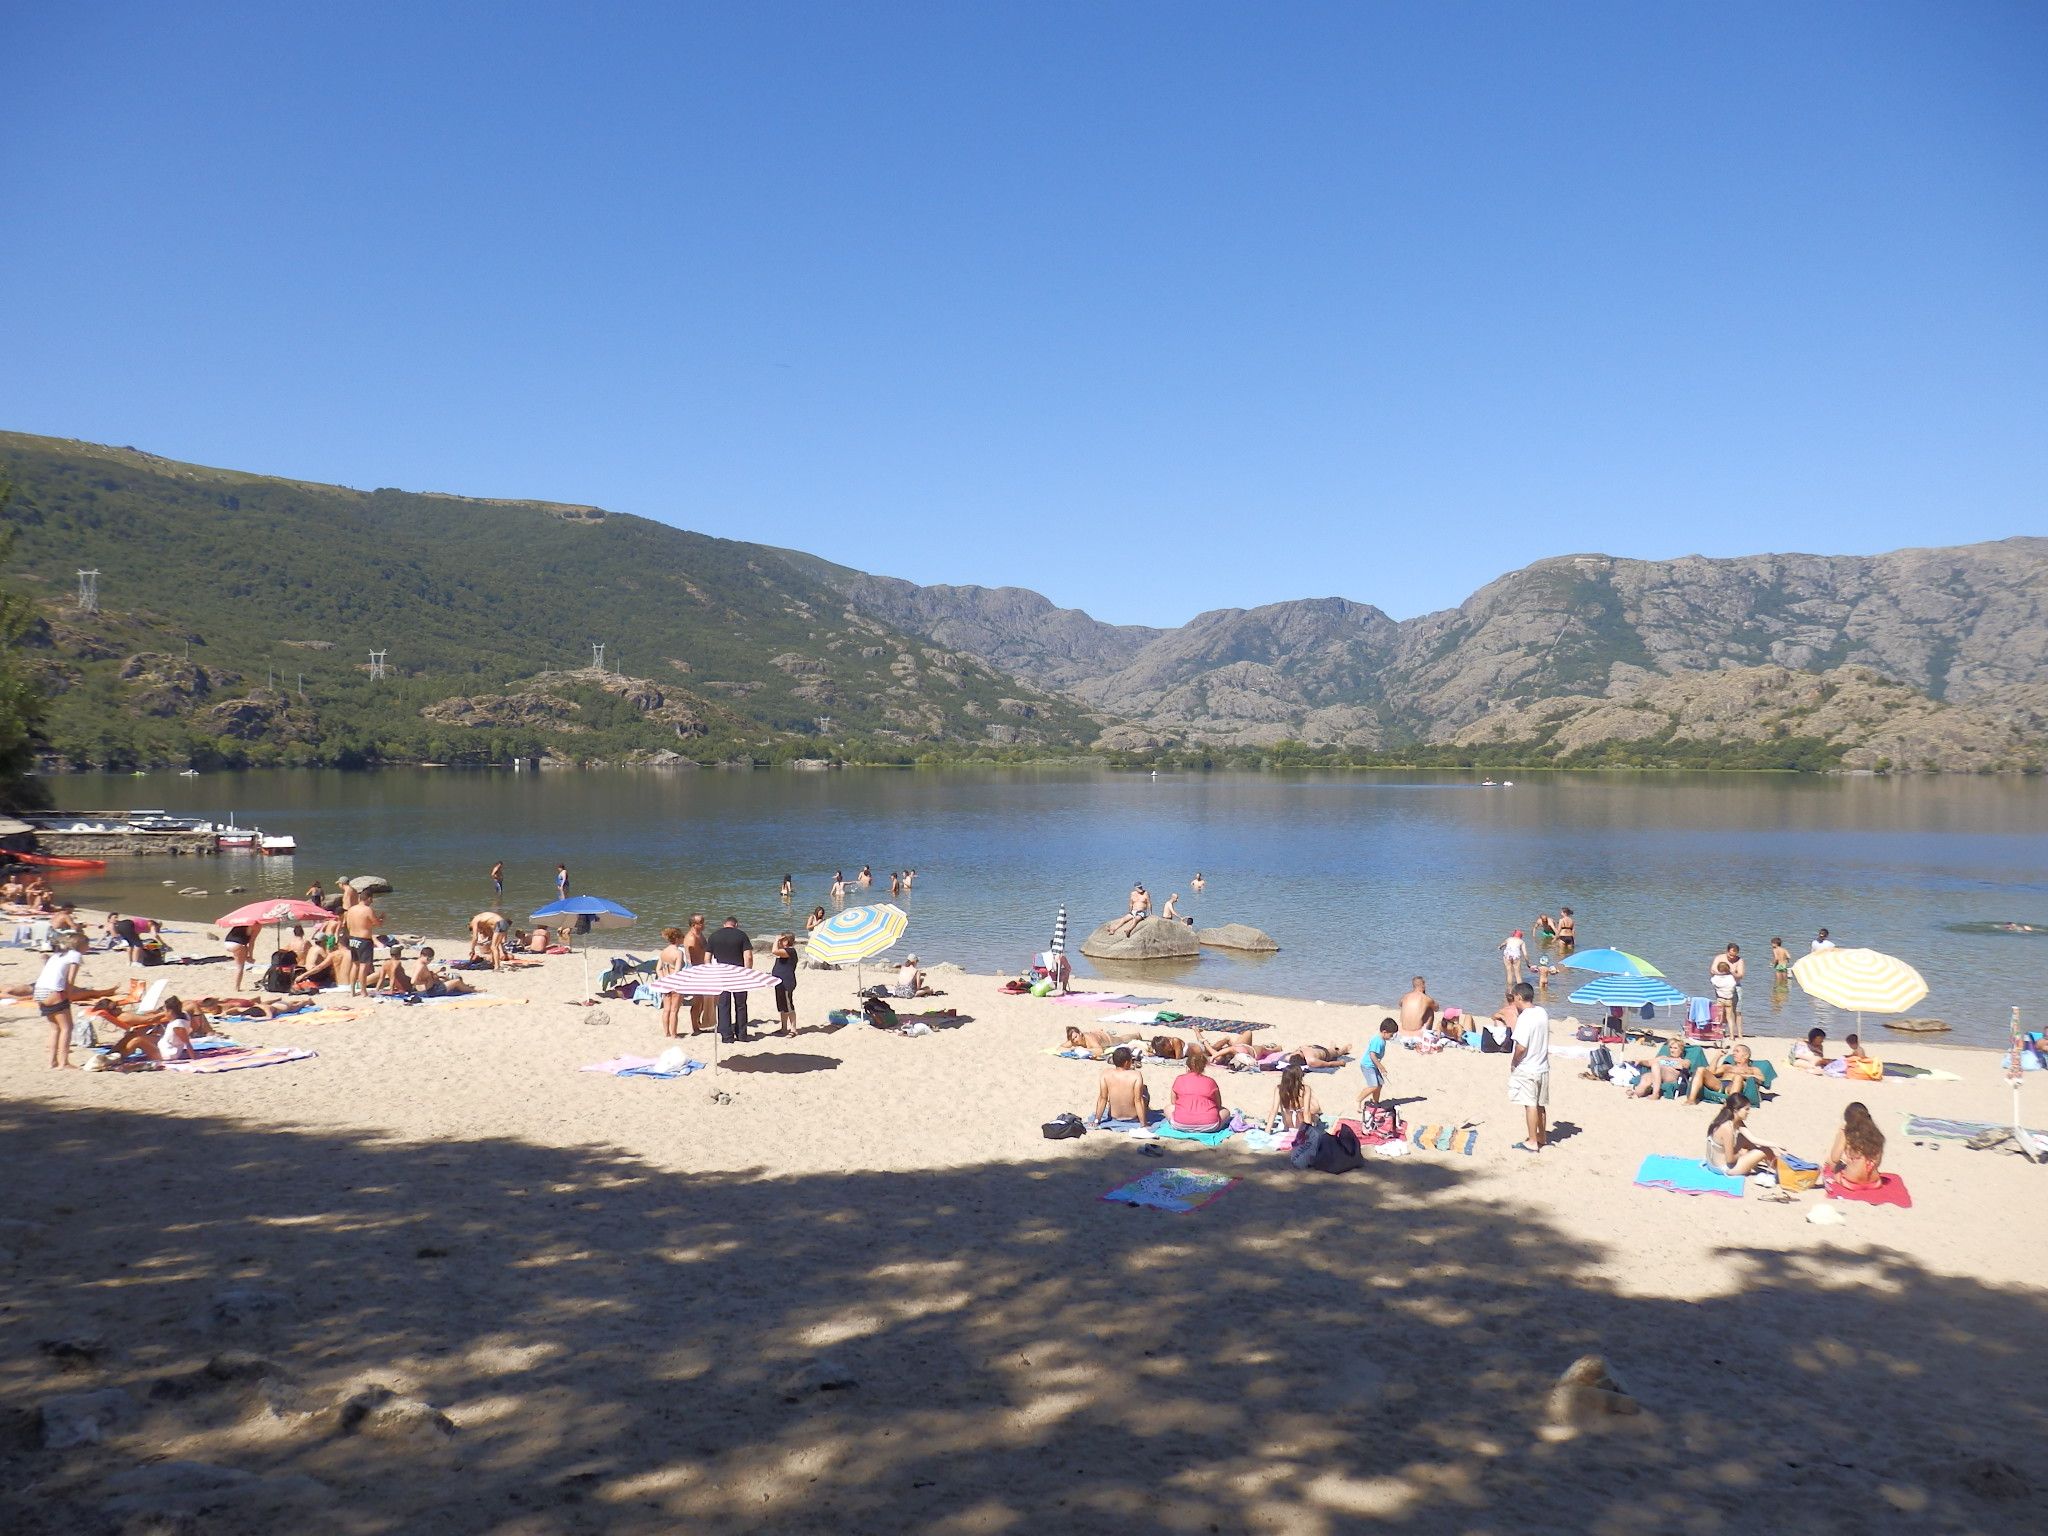 Daños y el impacto turístico en el lago Sanabria / Foto: Wikipedia